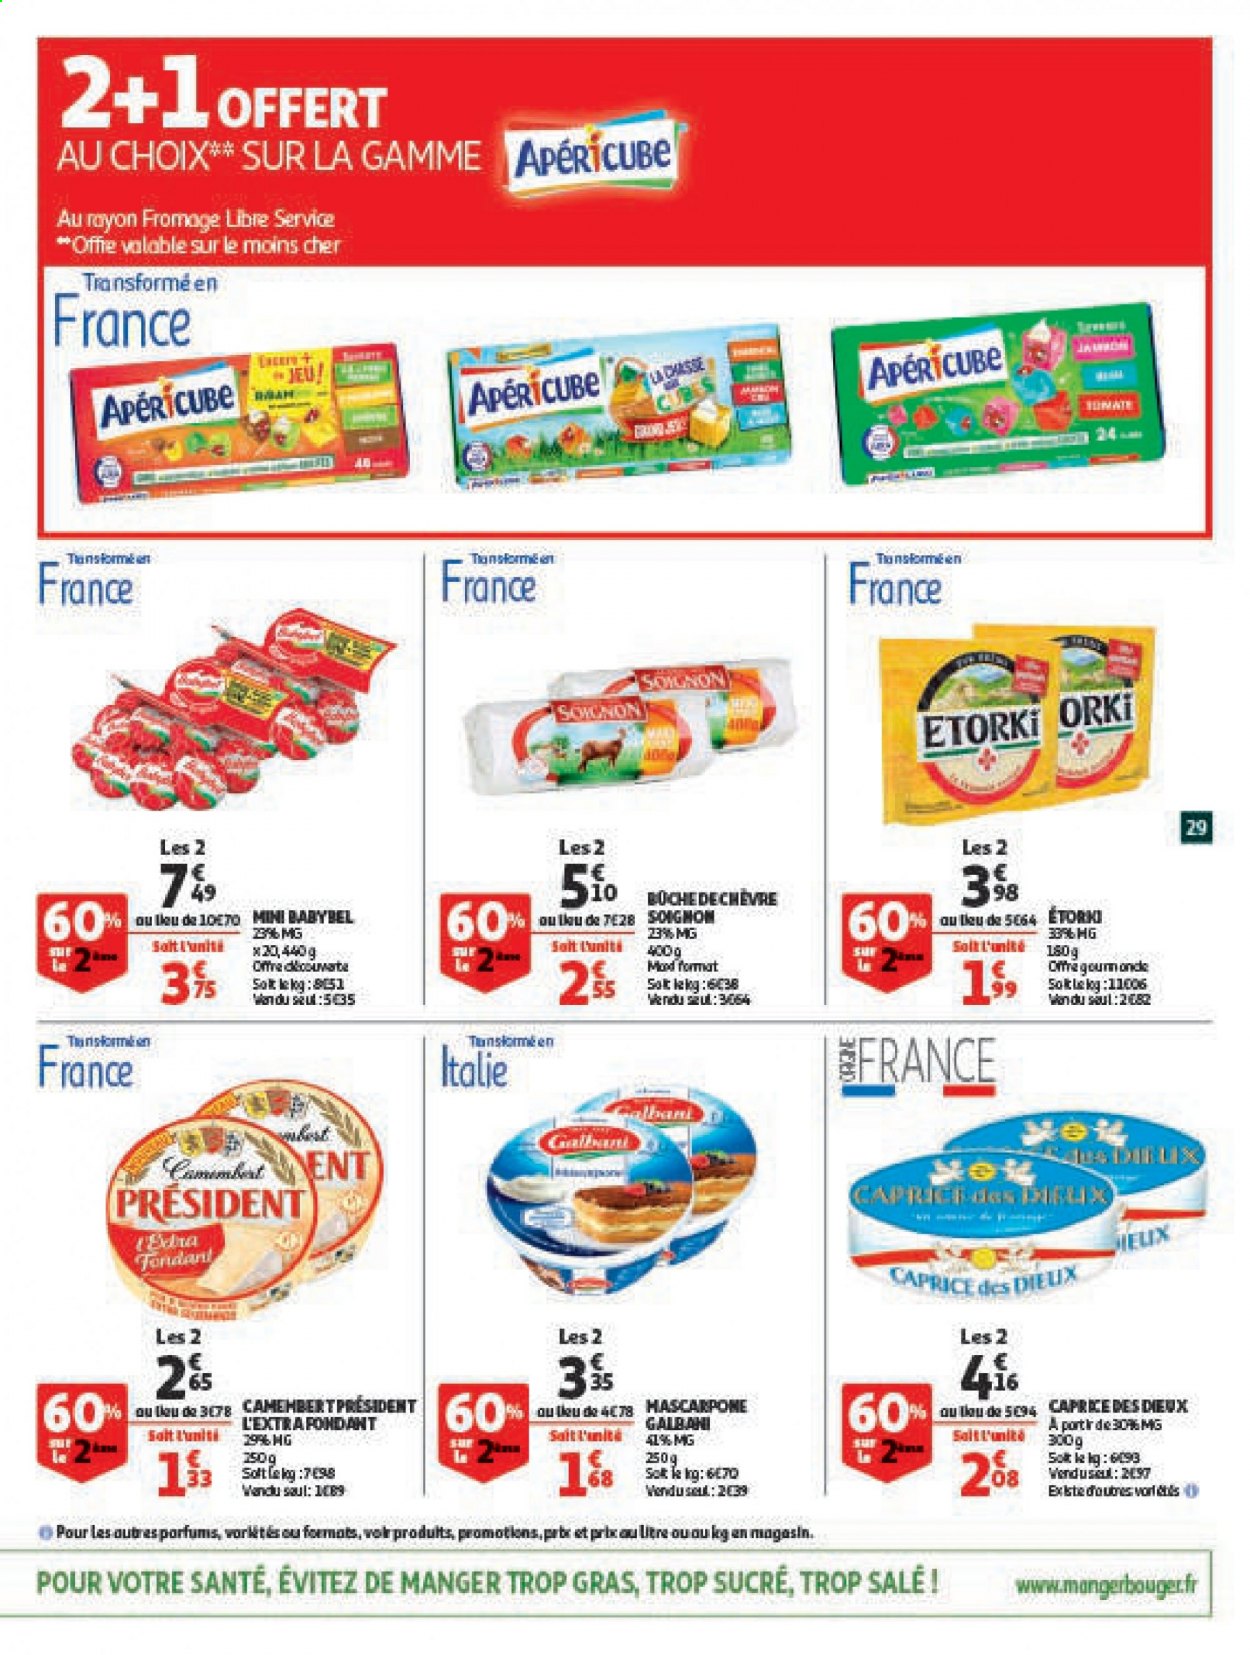 thumbnail - Catalogue Auchan - 24/03/2021 - 05/04/2021 - Produits soldés - jeu, Babybel, fromage, Caprice des Dieux, Président, apéricube. Page 29.